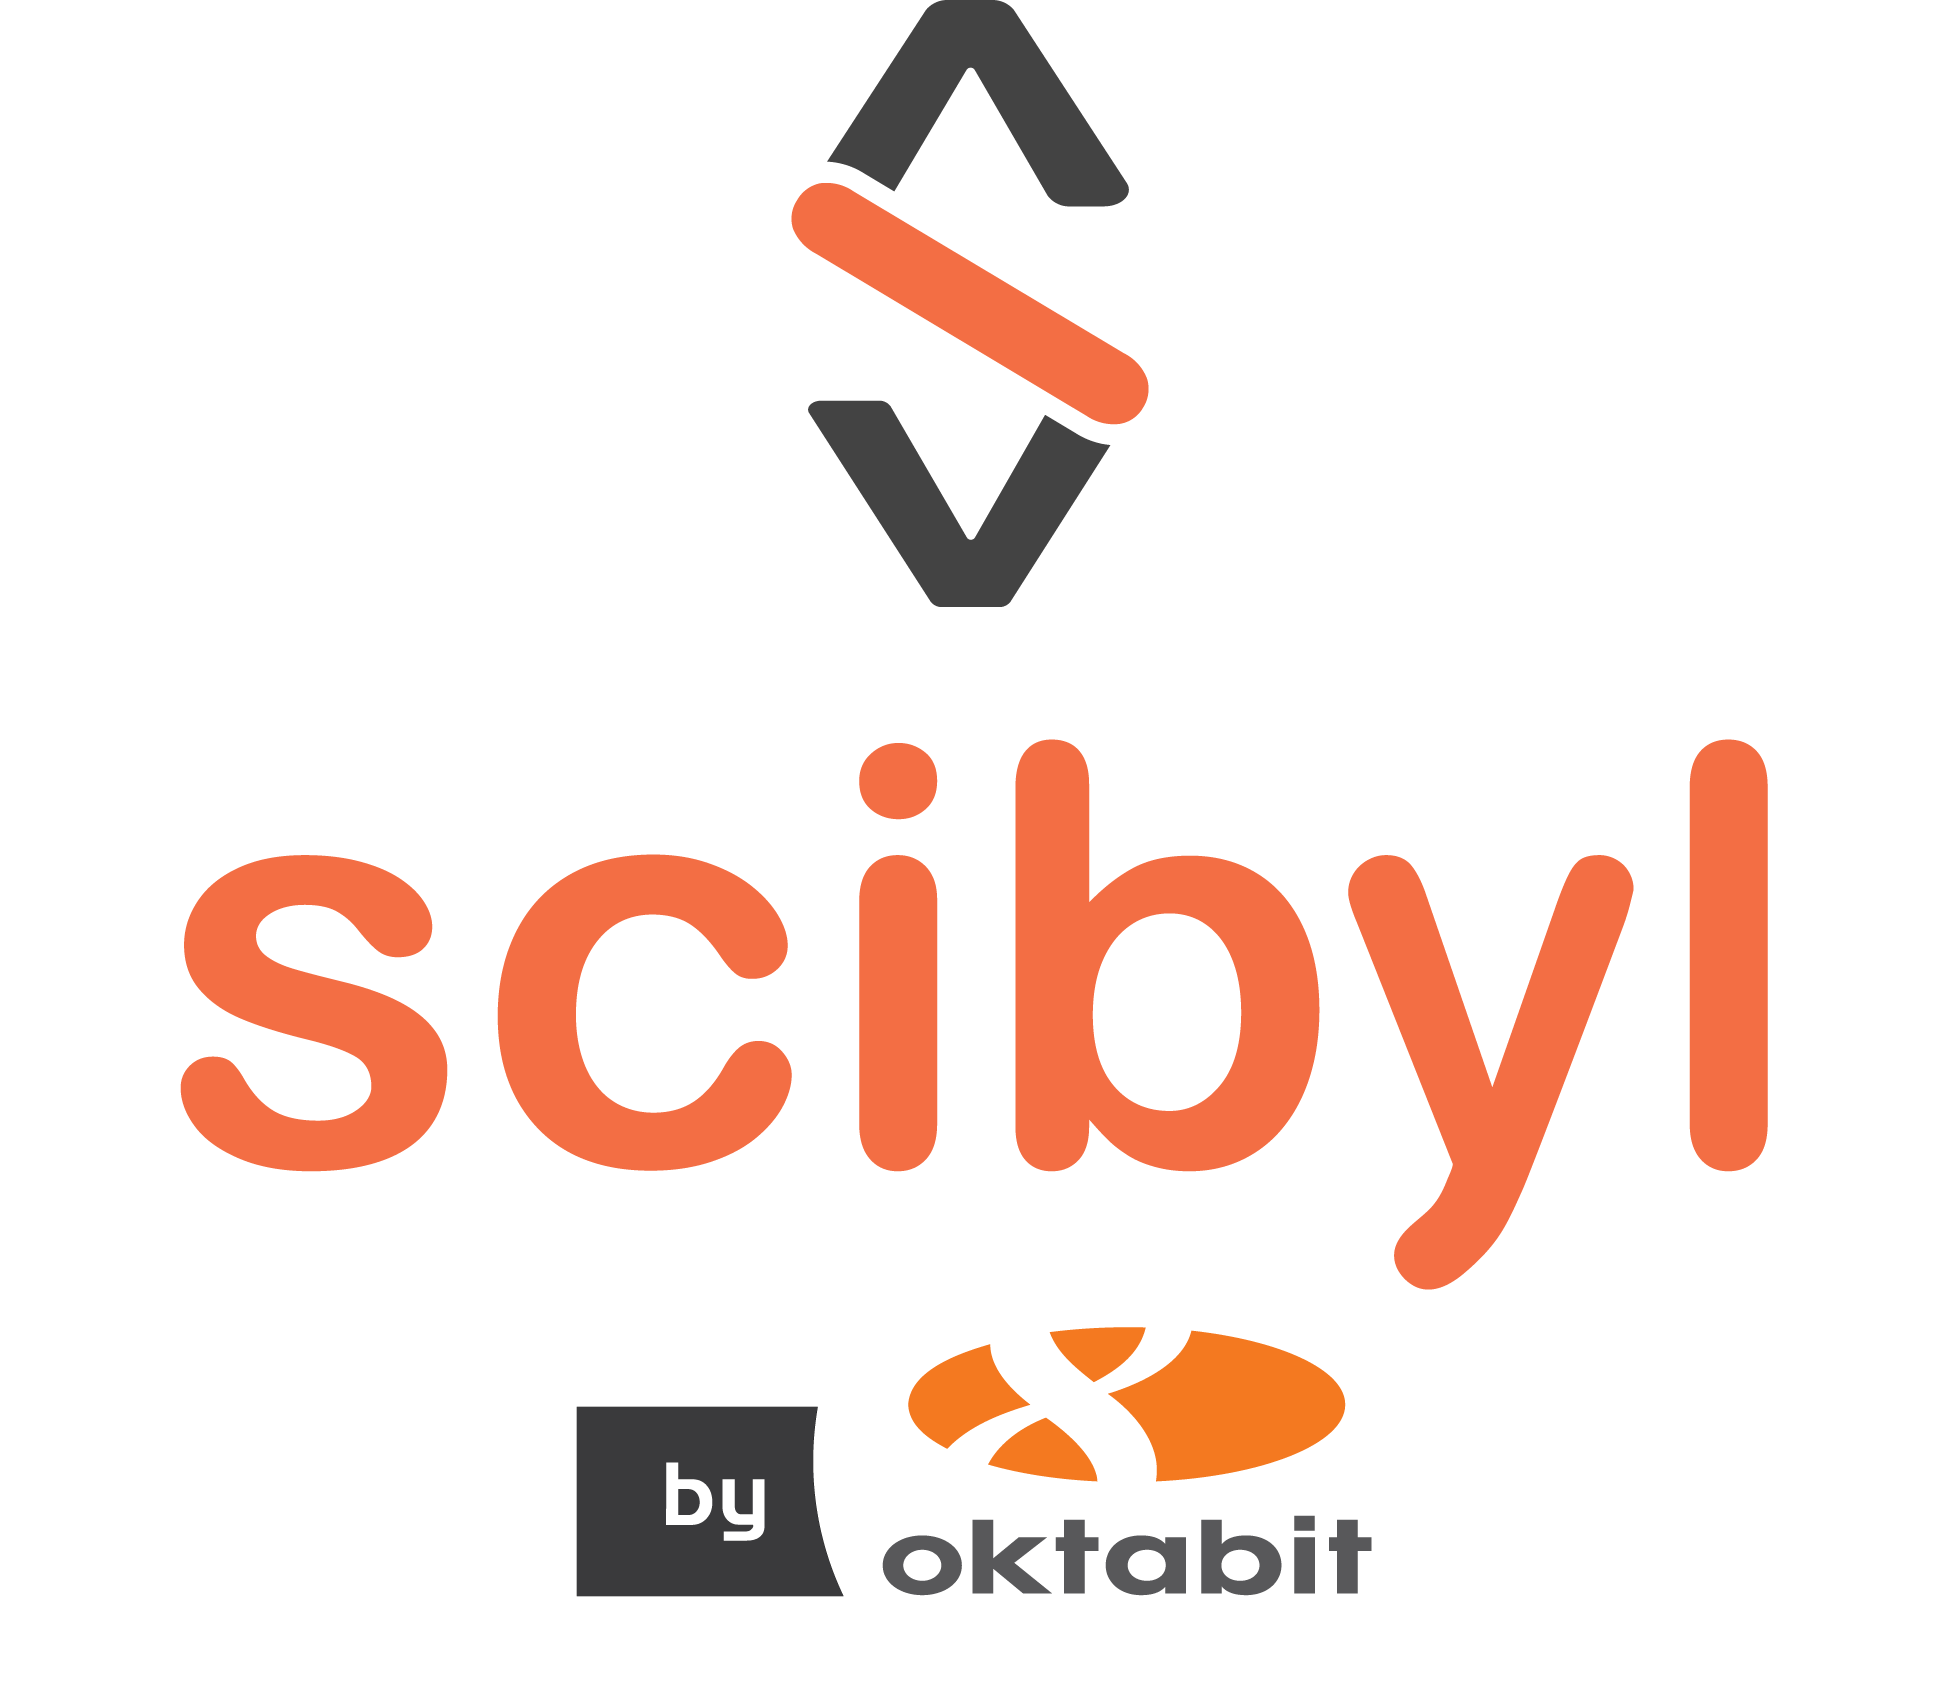 Scibyl_by_8bit_2-02